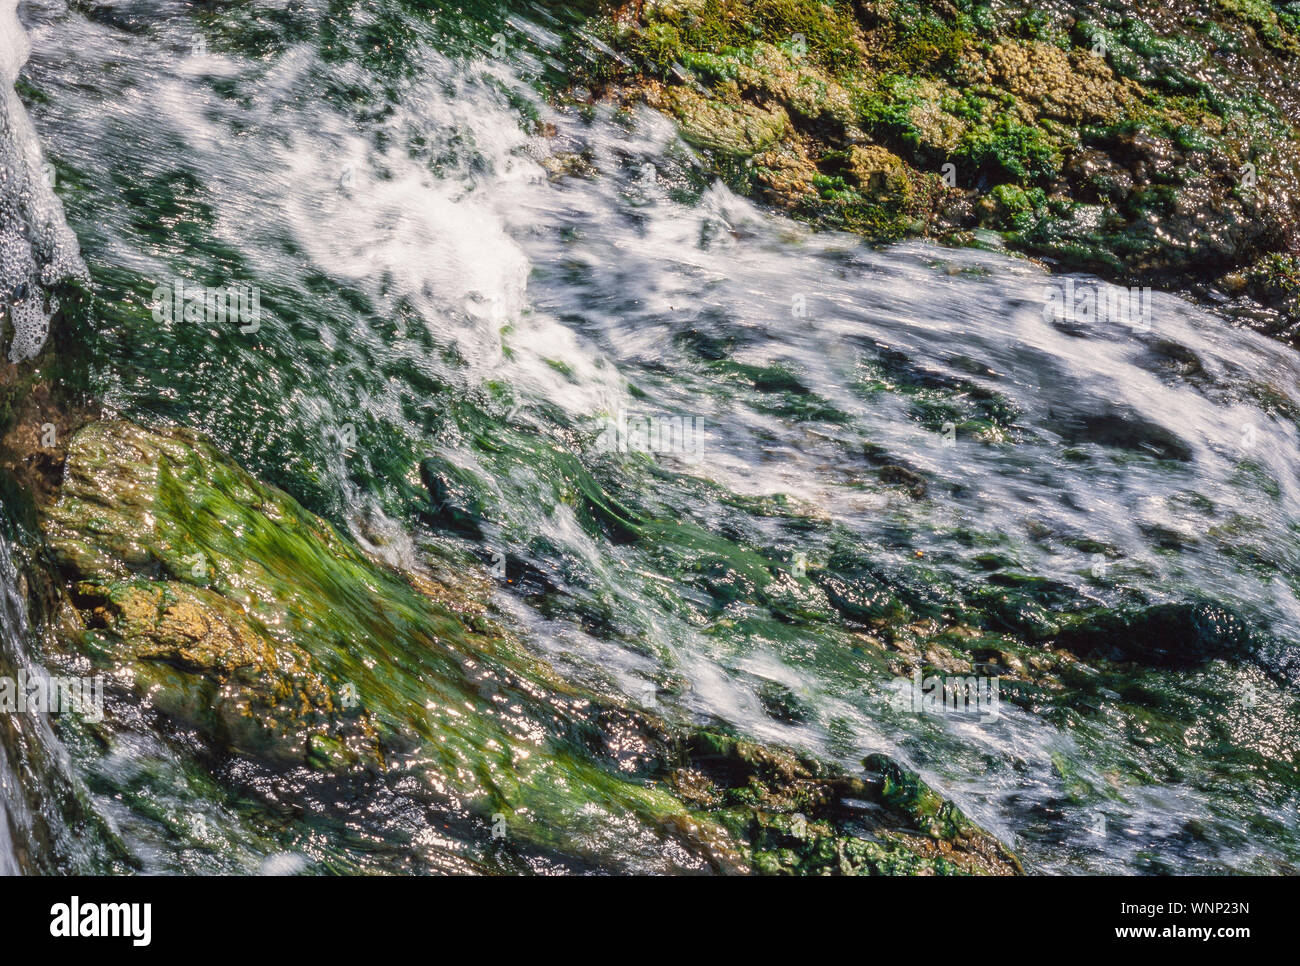 Waterfall stream with algae, rushing water Stock Photo